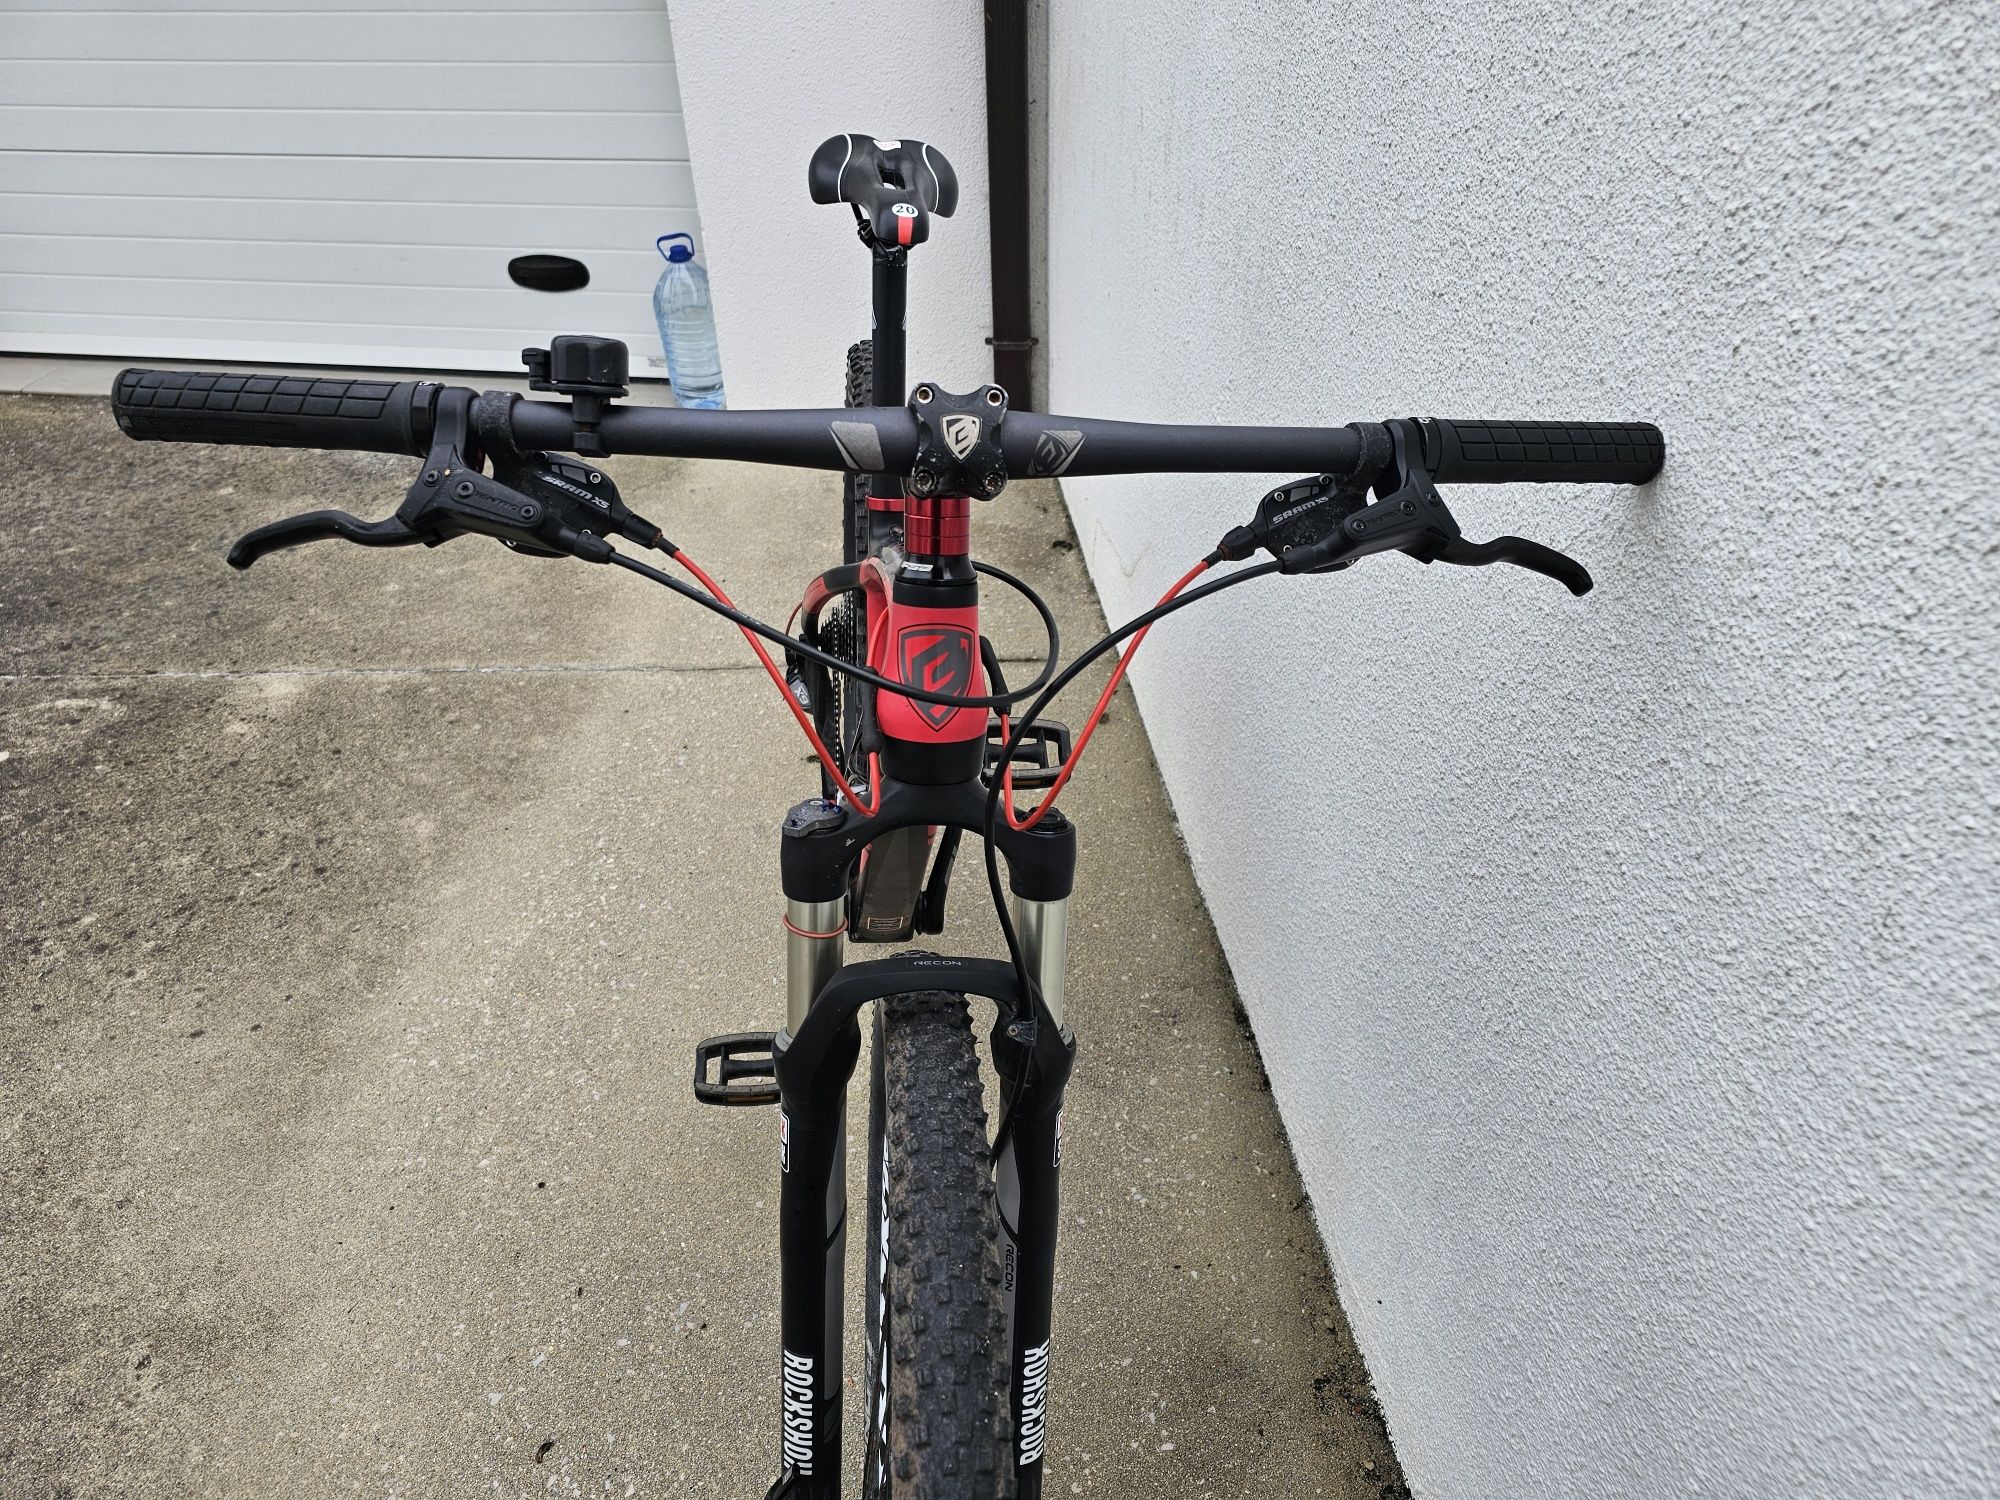 Bicicleta btt roda 29" carbono tam. M (óptimo estado)